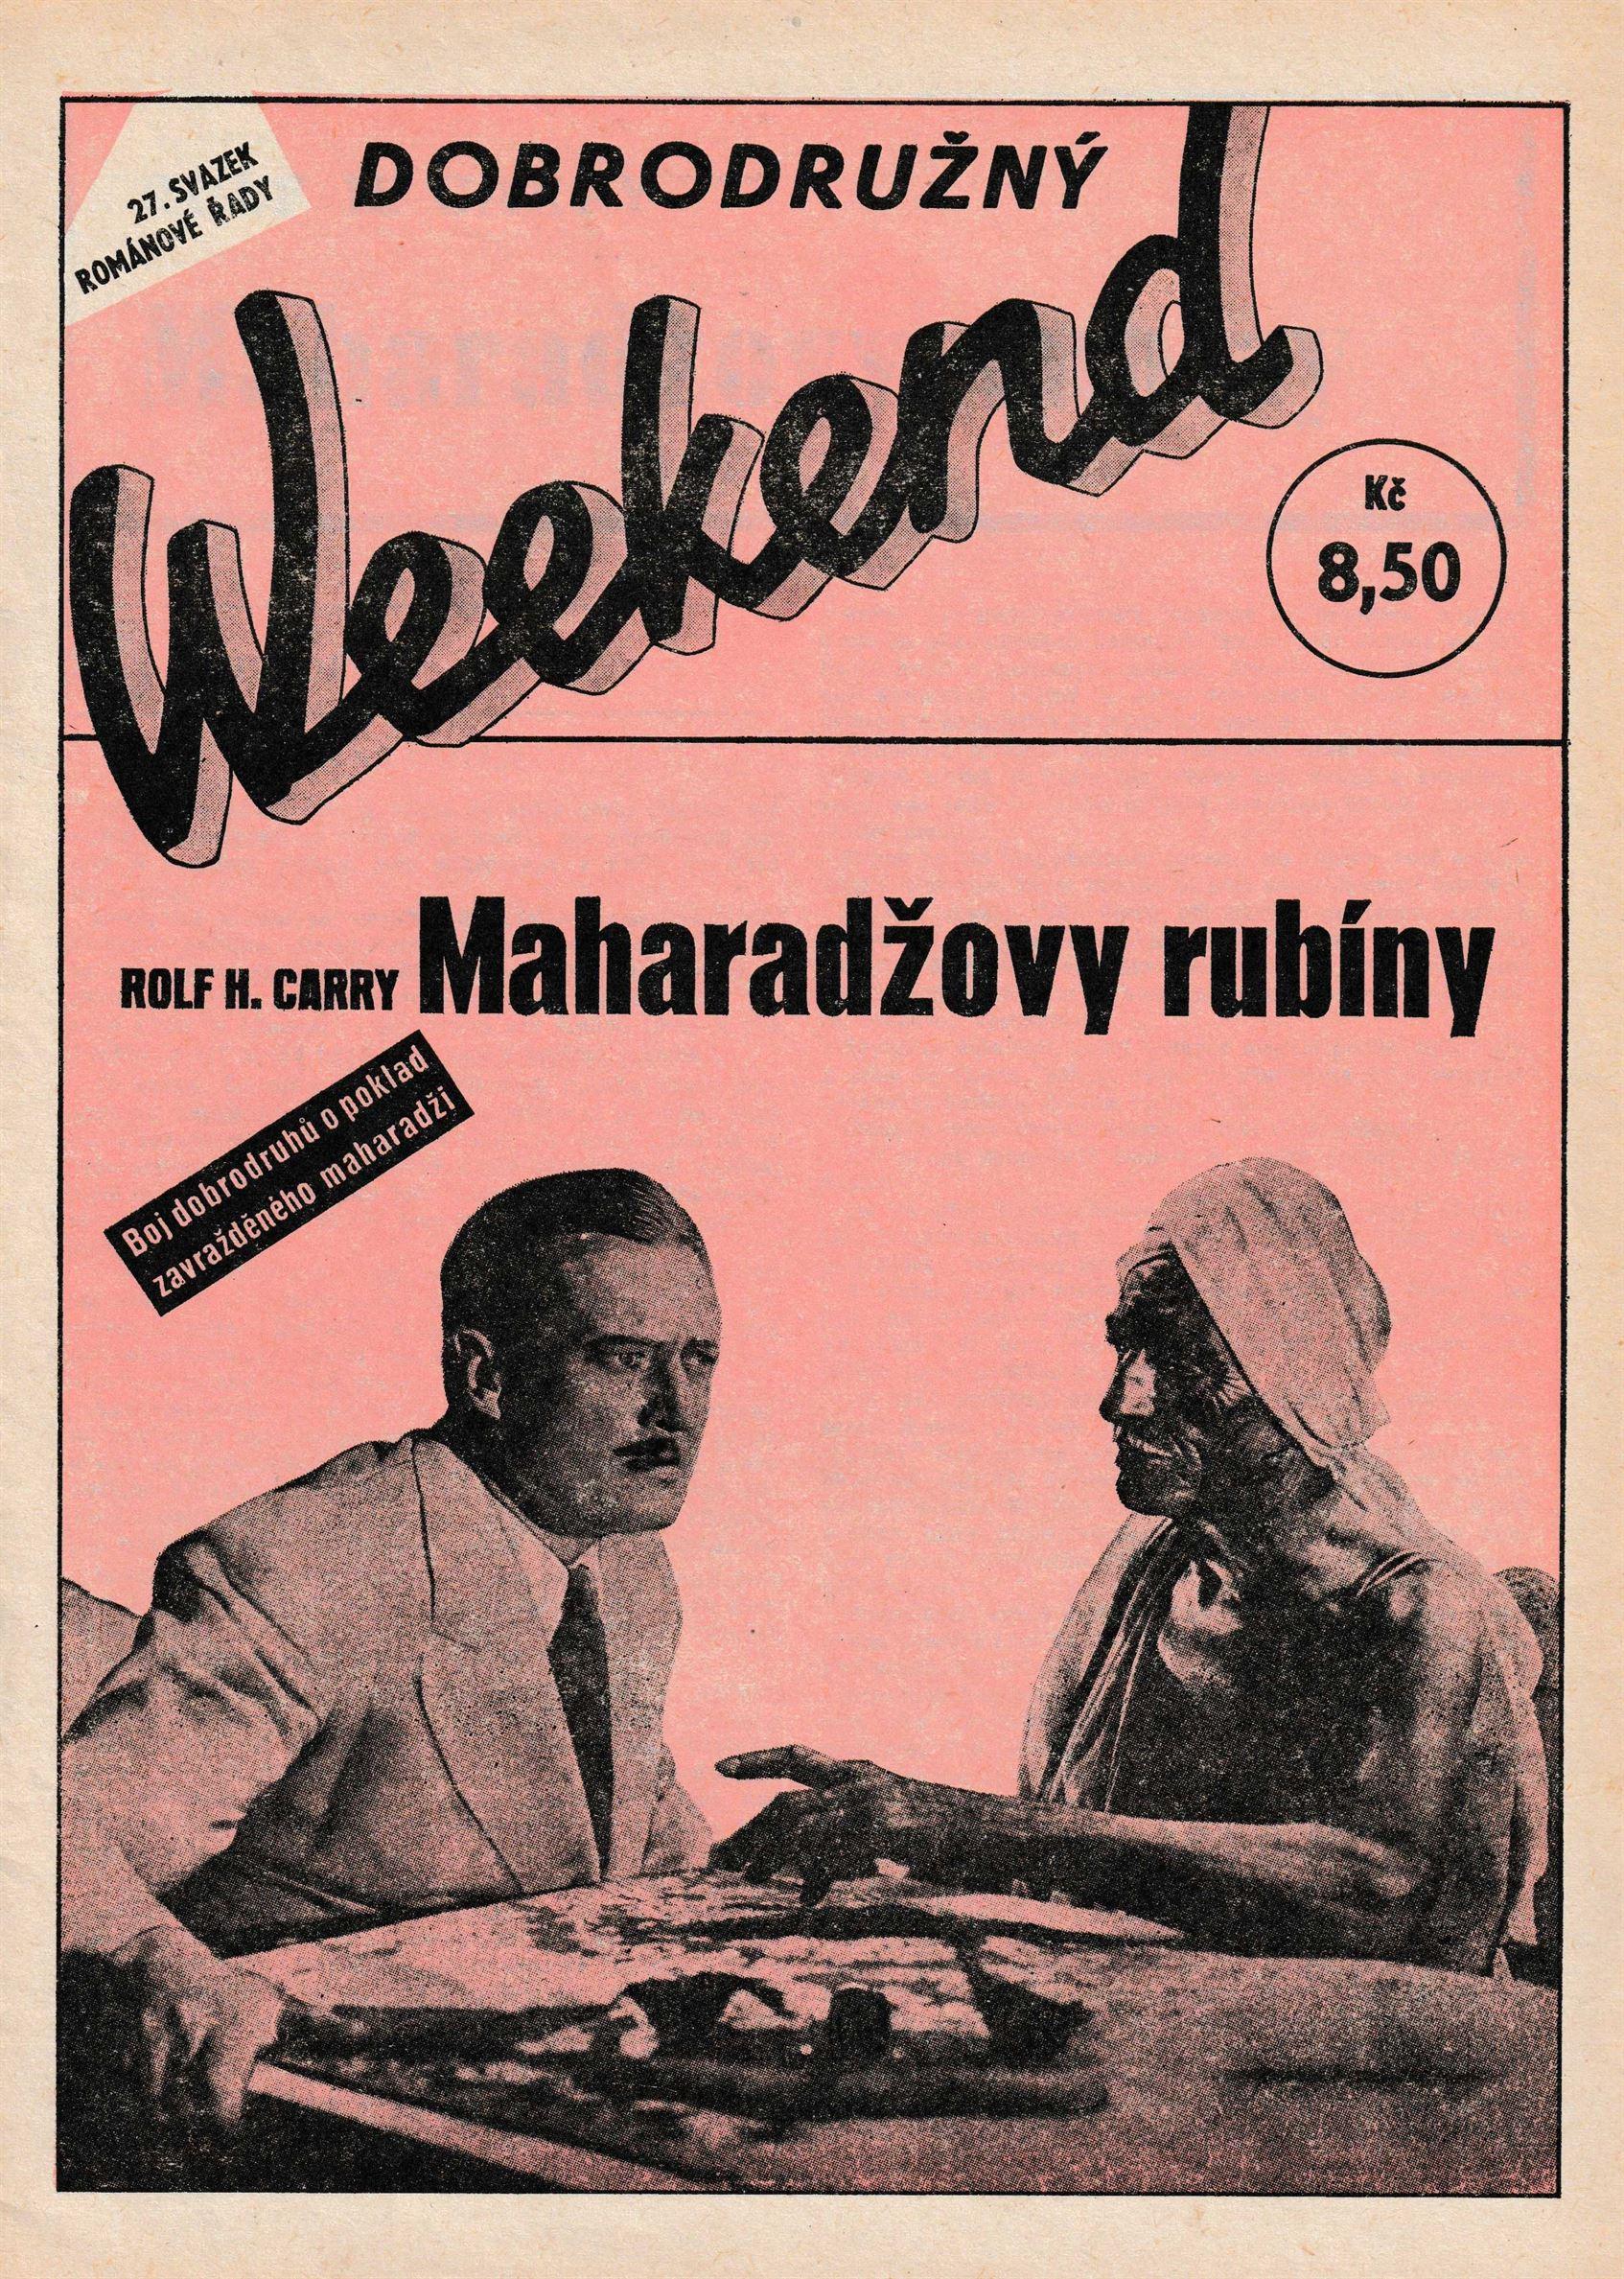 Dobrodružný Weekend Číslo 27 - Maharadžovy rubíny od Rolf H. Carry (Velmi Dobrý Stav)